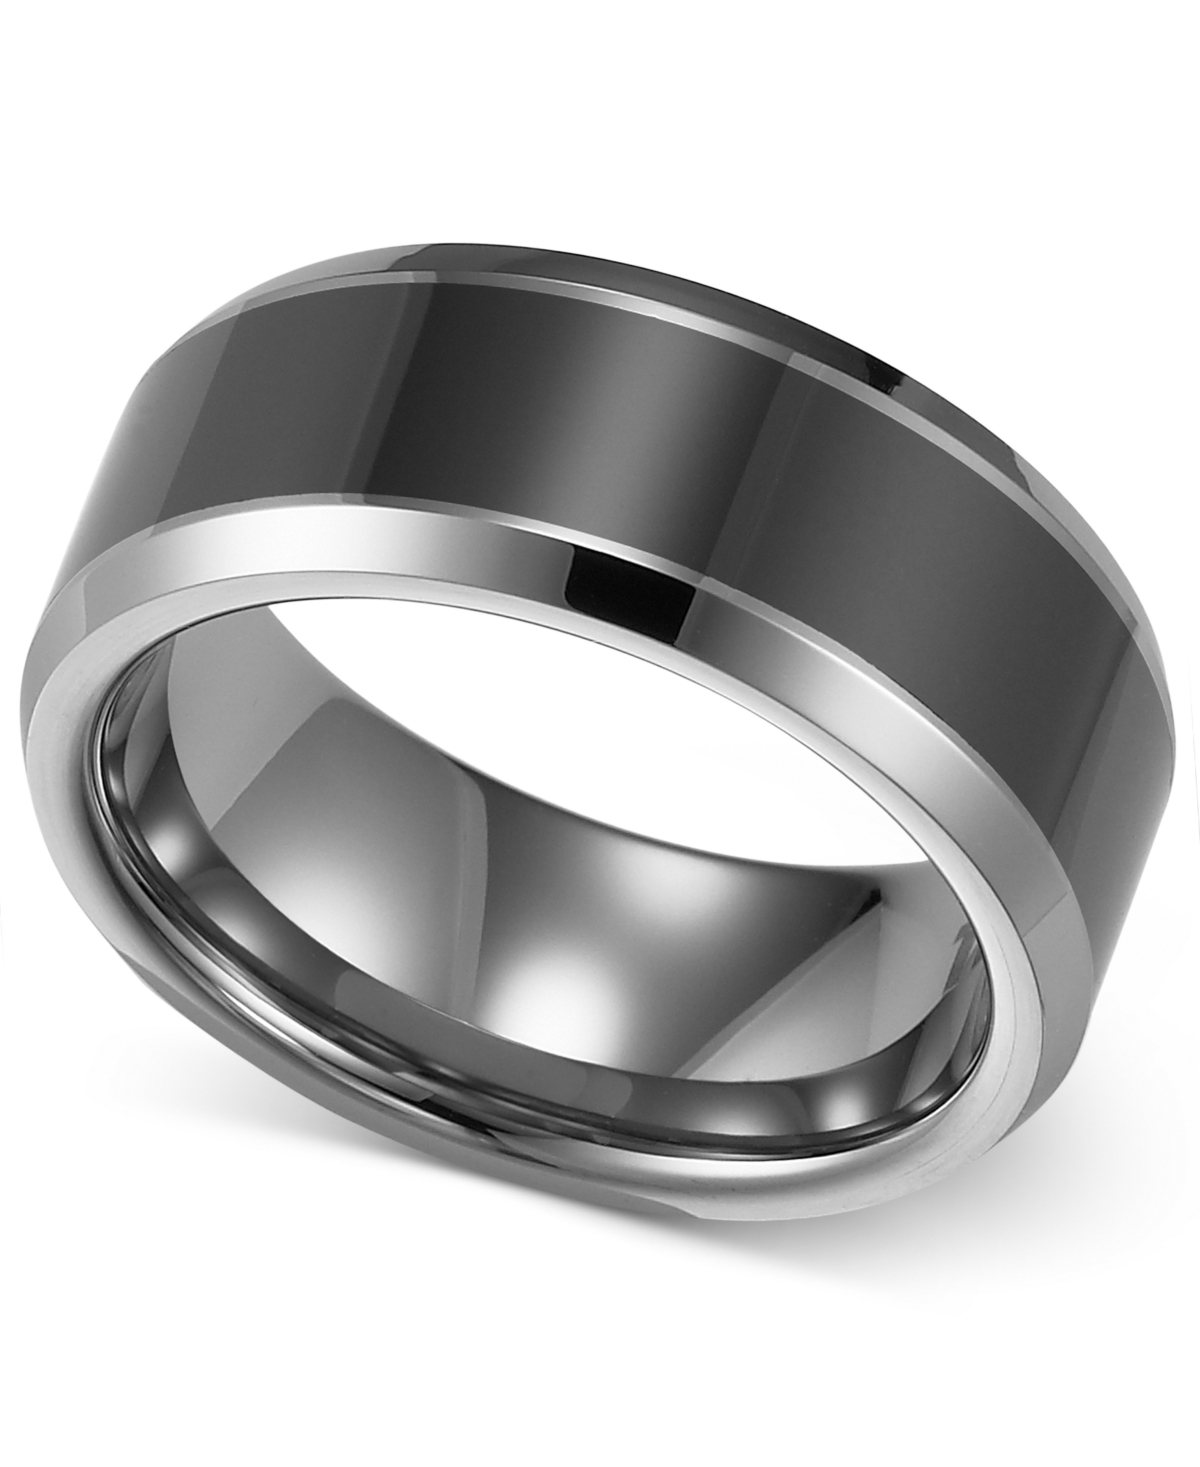 Men's Tungsten Carbide and Ceramic Ring, 8mm Wedding Band - Tungsten